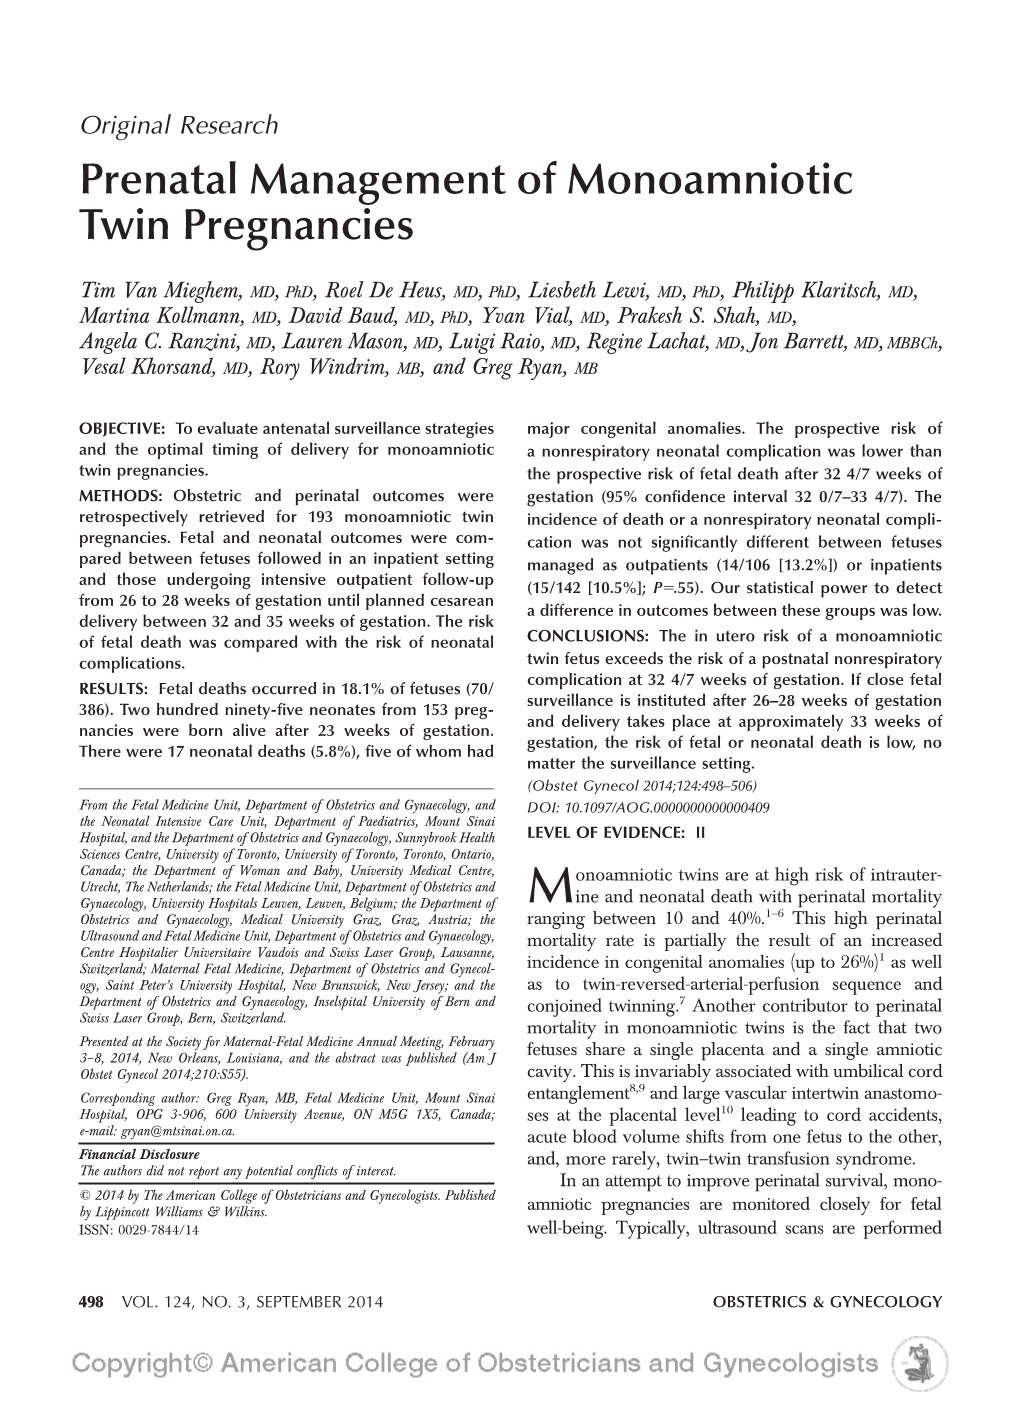 Prenatal Management of Monoamniotic Twin Pregnancies